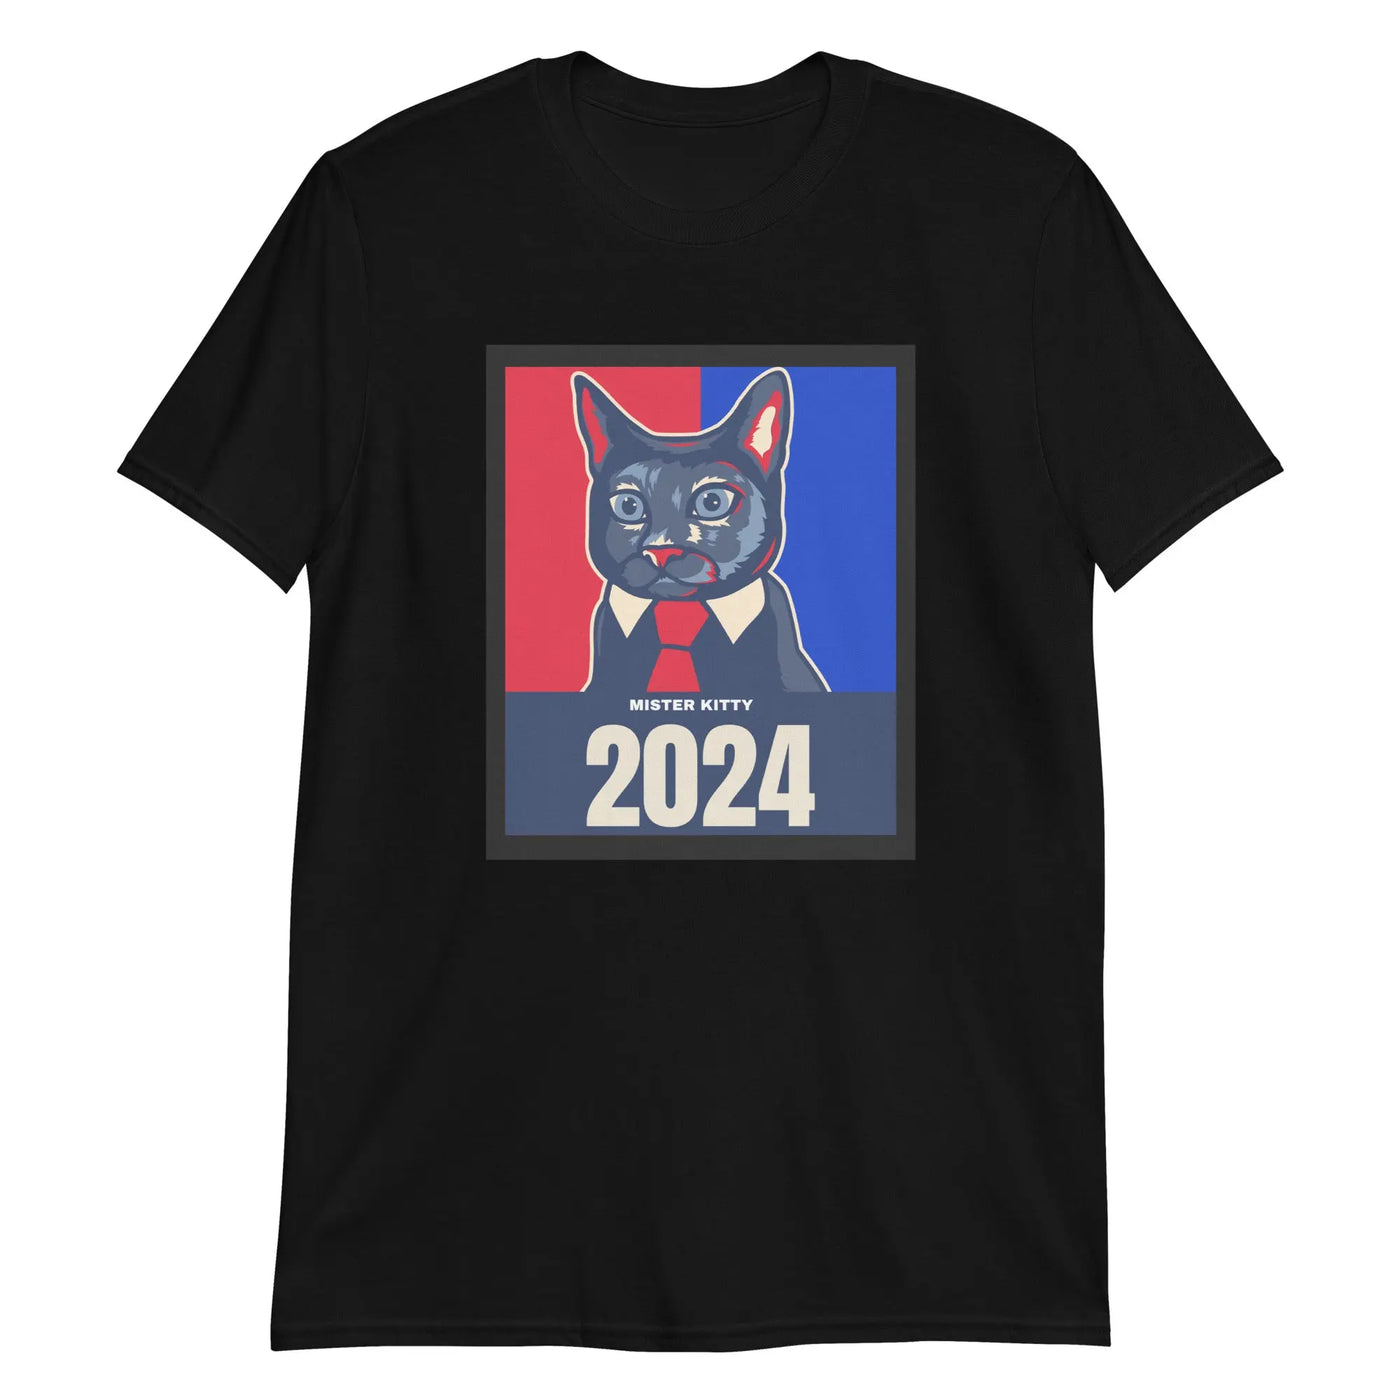 Kr. Kitten Unisex T-Shirt CRZYTEE